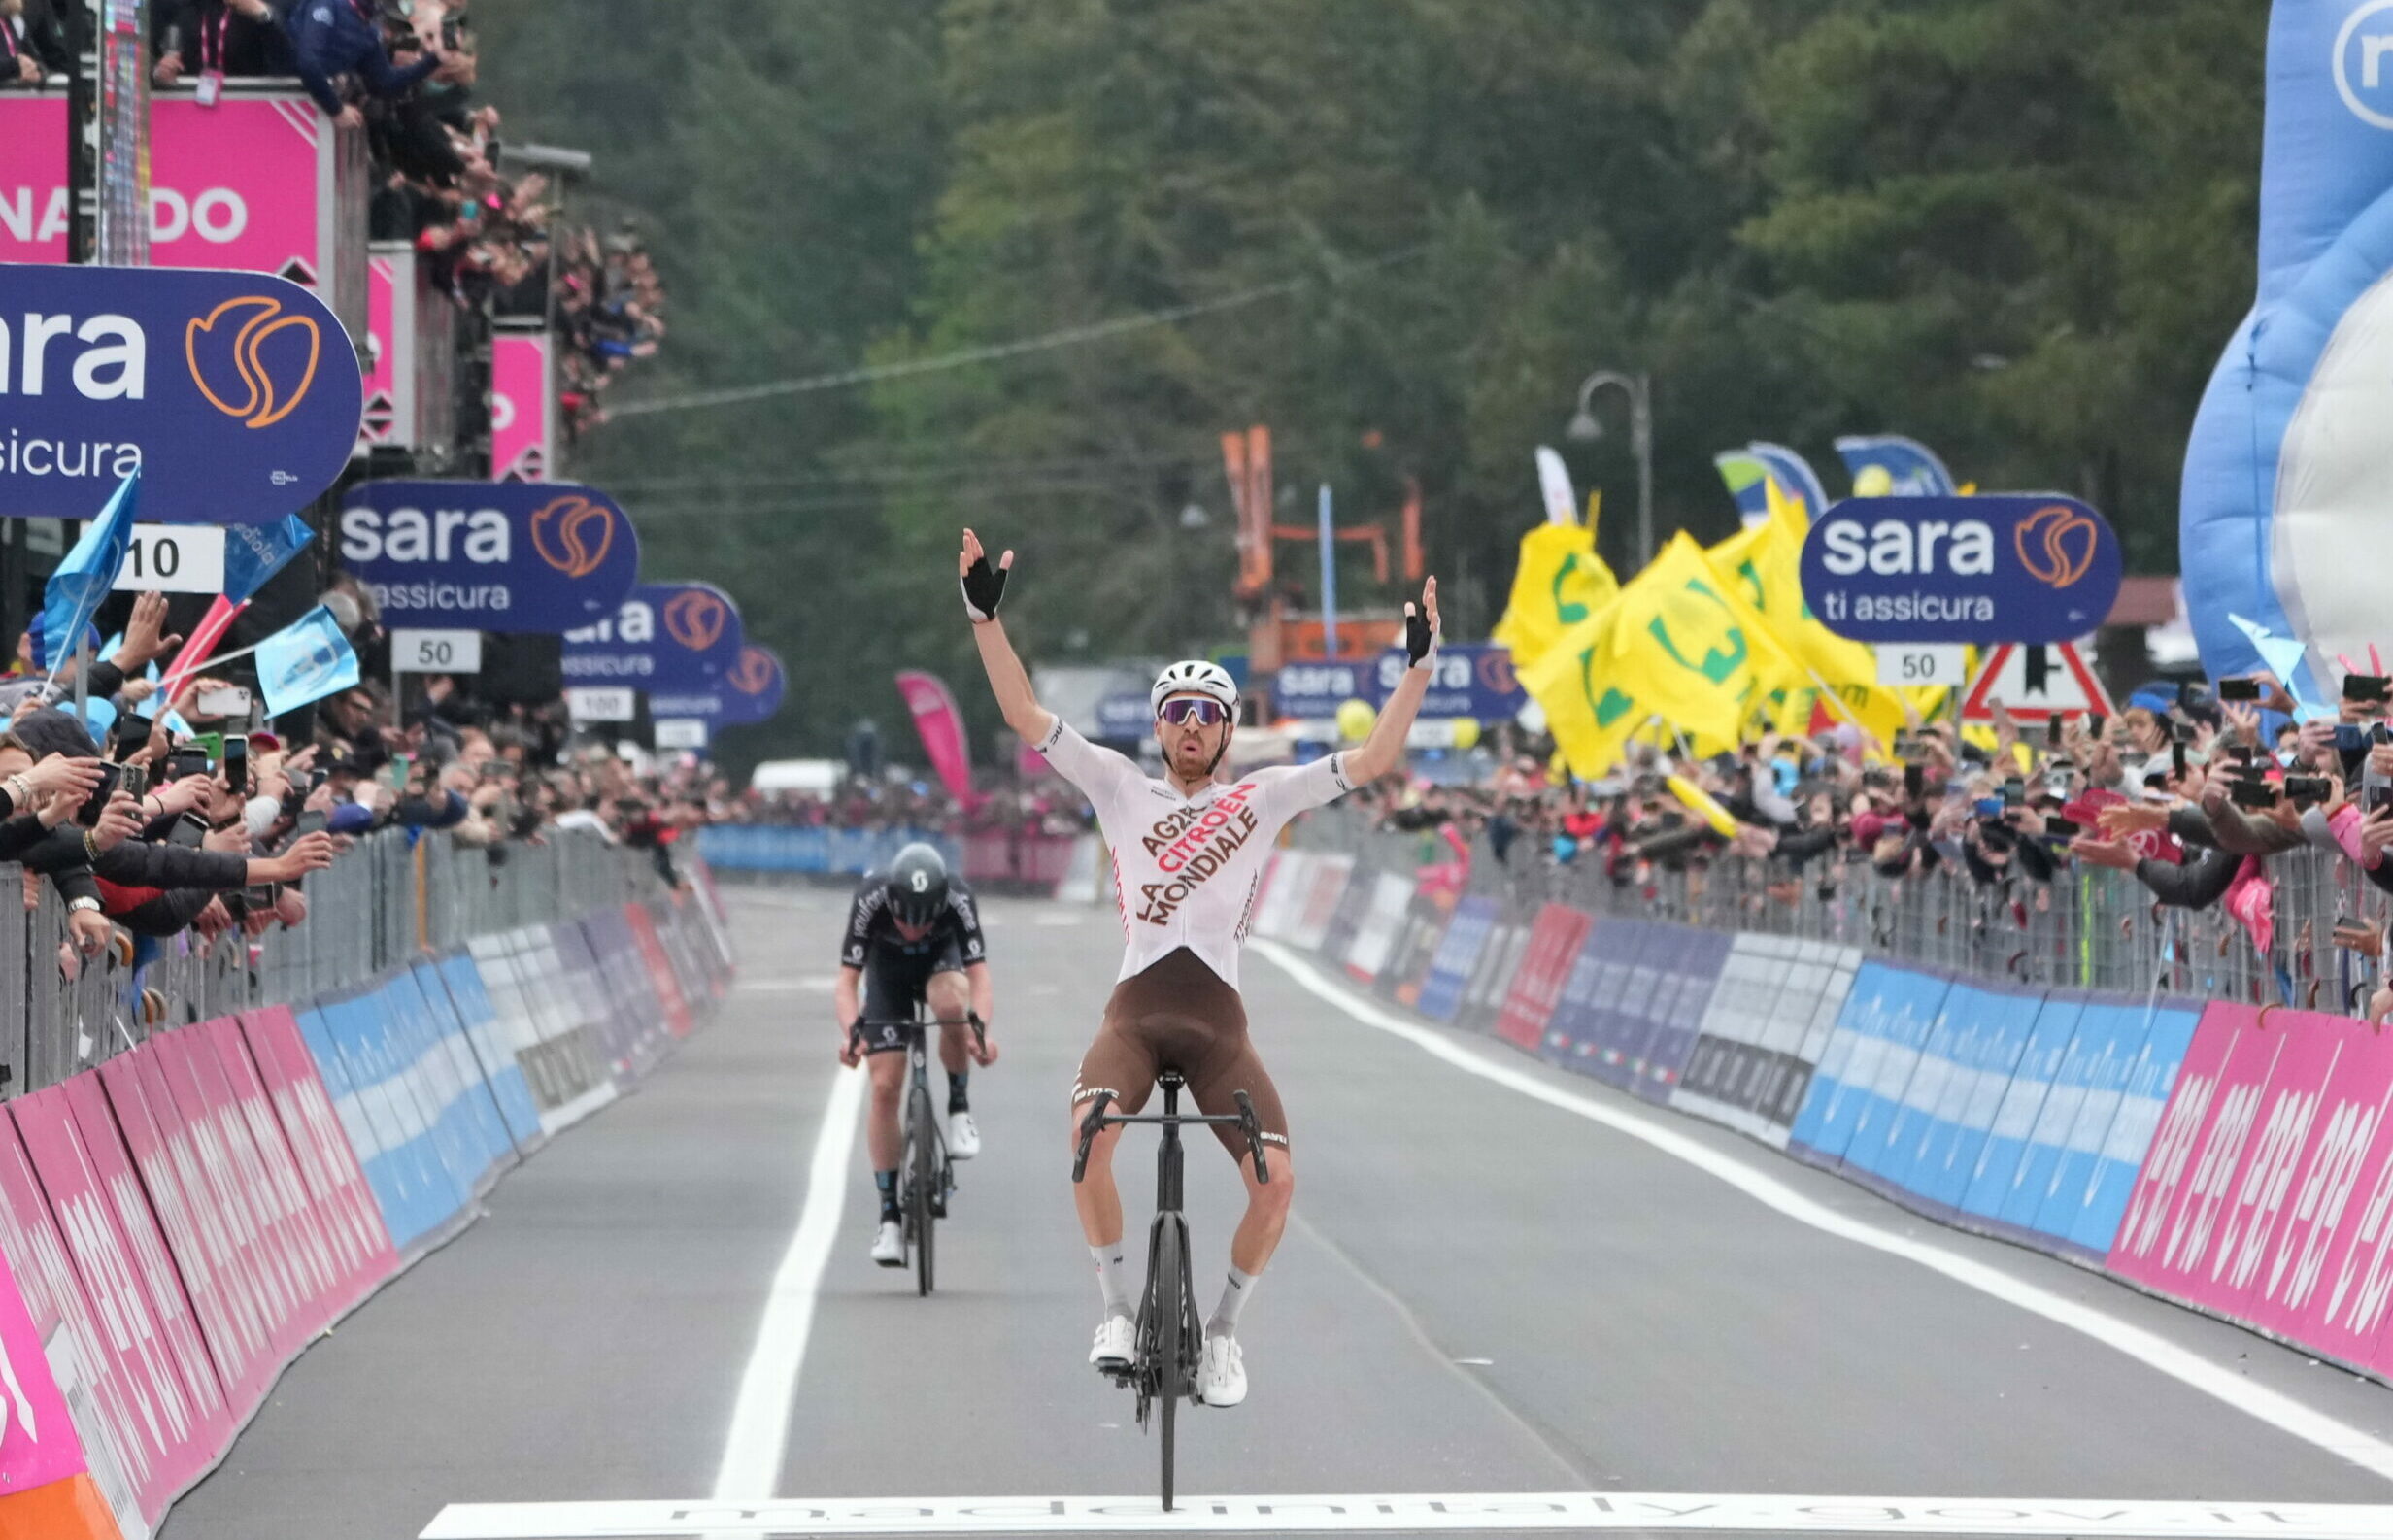 Aurelien Paret Peintre ganó la cuarta etapa del Giro de Italia. Foto: Giro